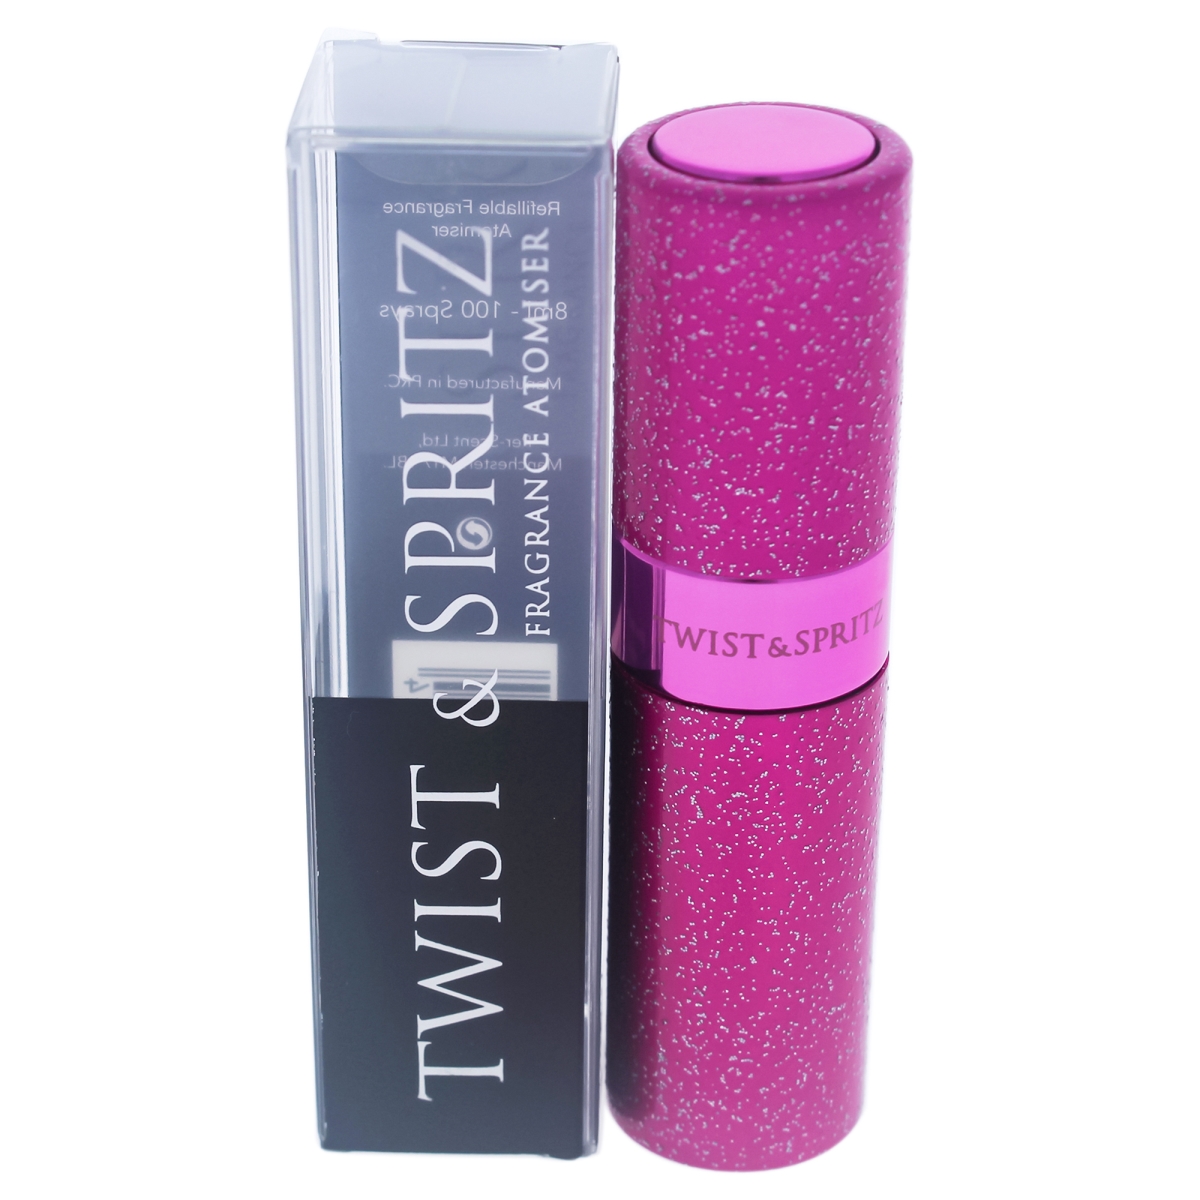 I0091000 Atomiser Refillable Spray For Women - Hot Pink Glitter - 8 Ml